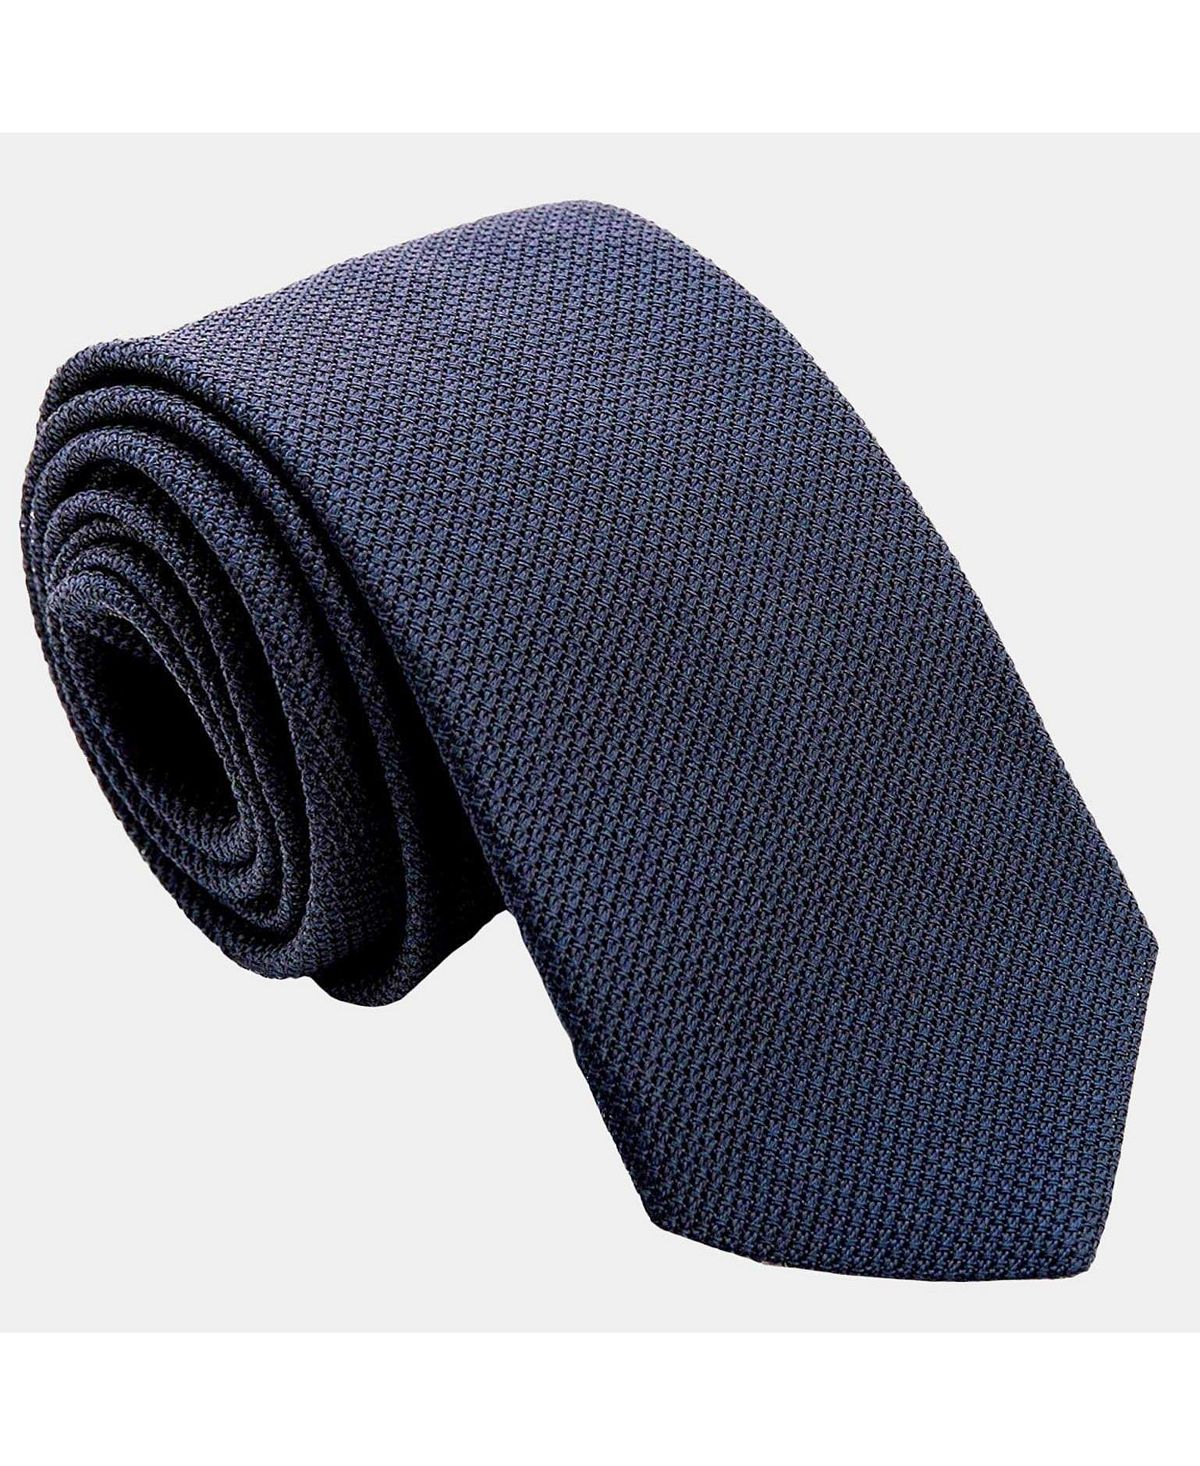 Cavour — удлиненный шелковый галстук с гренадиновым узором для мужчин — темно-синий Elizabetta роскошный мужской комплект зеленых галстуков из 6 предметов с галстуком темно зеленый